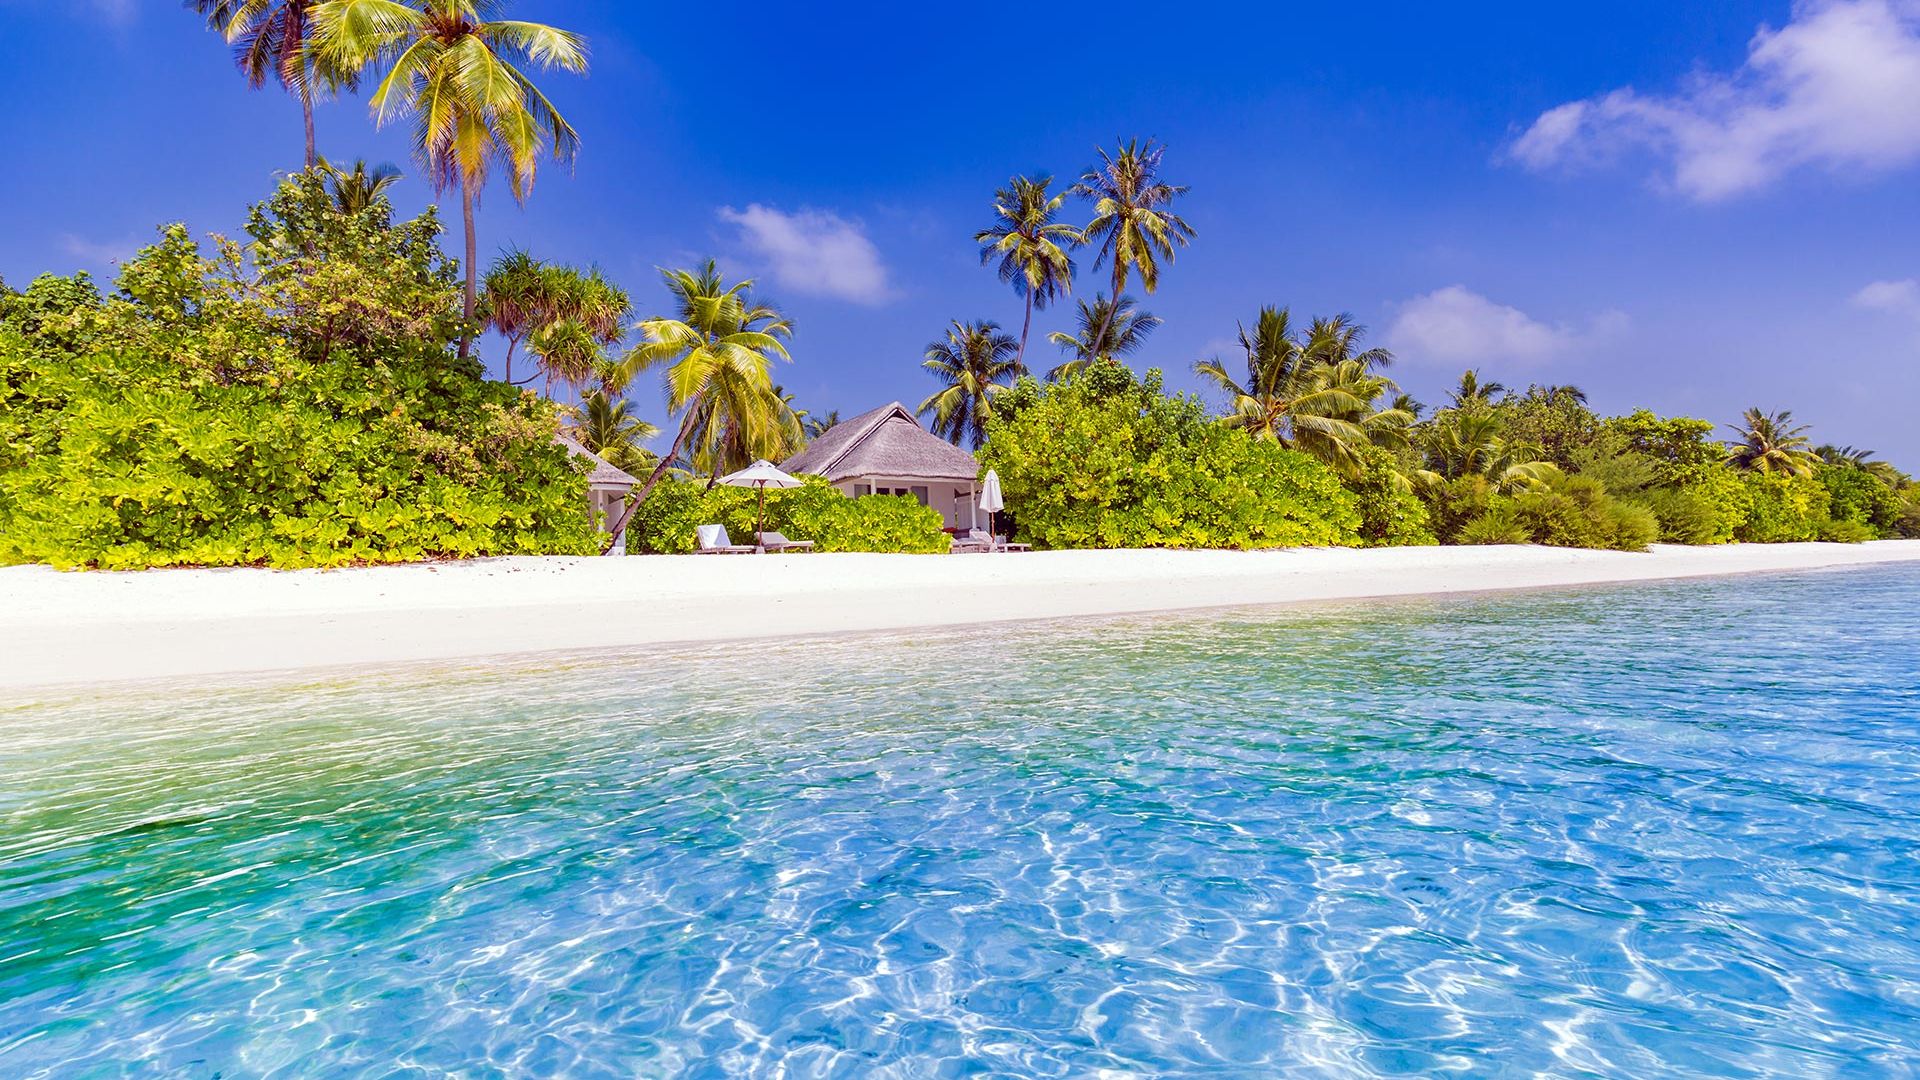 Sejur plaja Luxury All Inclusive Maldive 9 zile, cu Razvan Pascu - ianuarie 2022